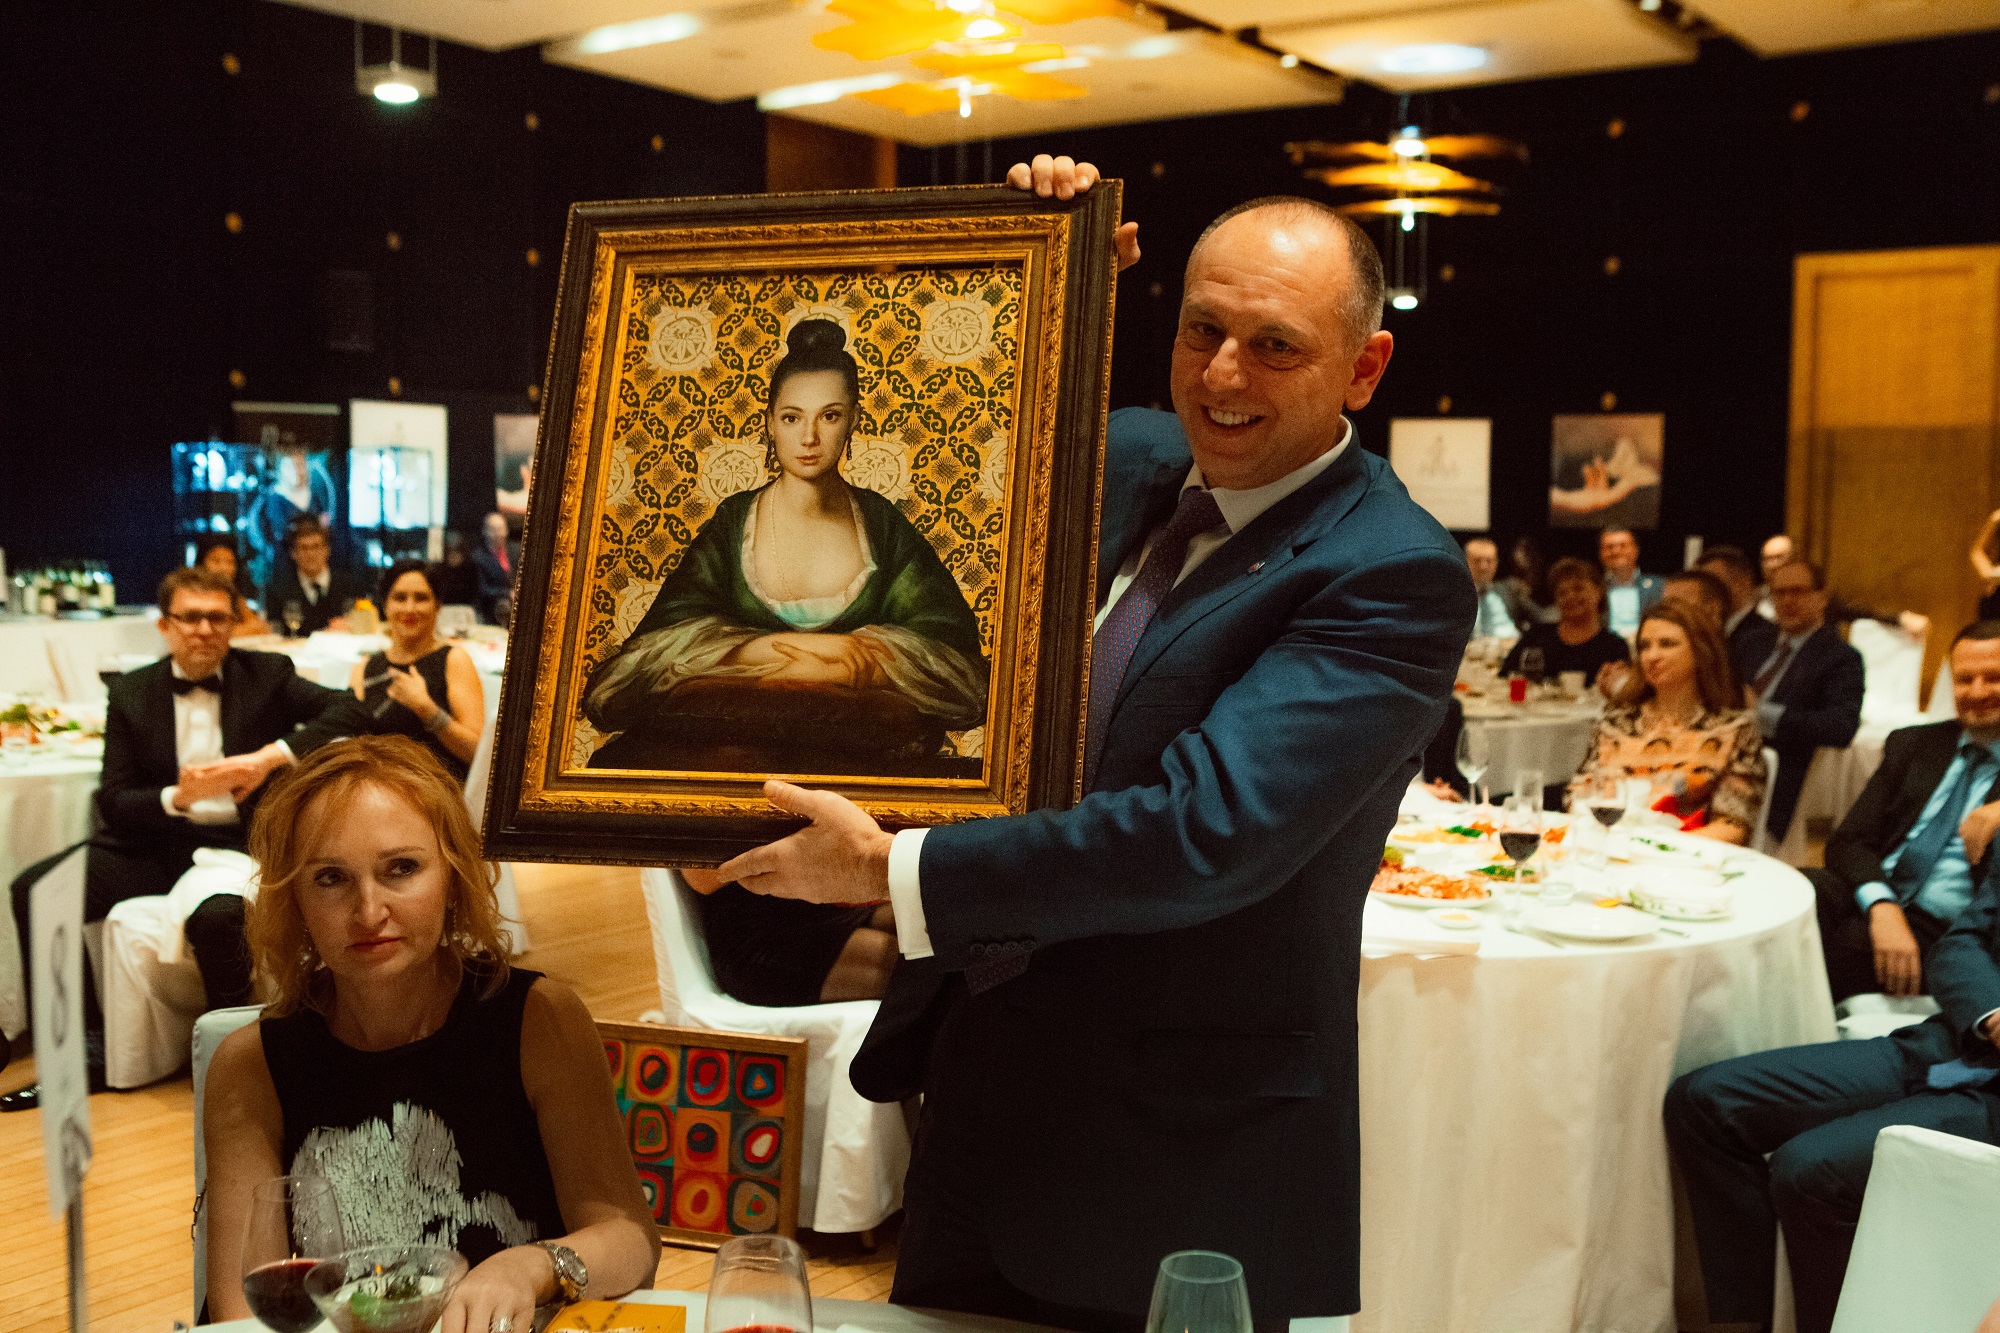 Максимальную сумму заплатил Дмитрий Пумпянский за картину Никаса Сафронова с изображенной на ней Чулпан Хаматовой &mdash; 3,06 млн рублей.
